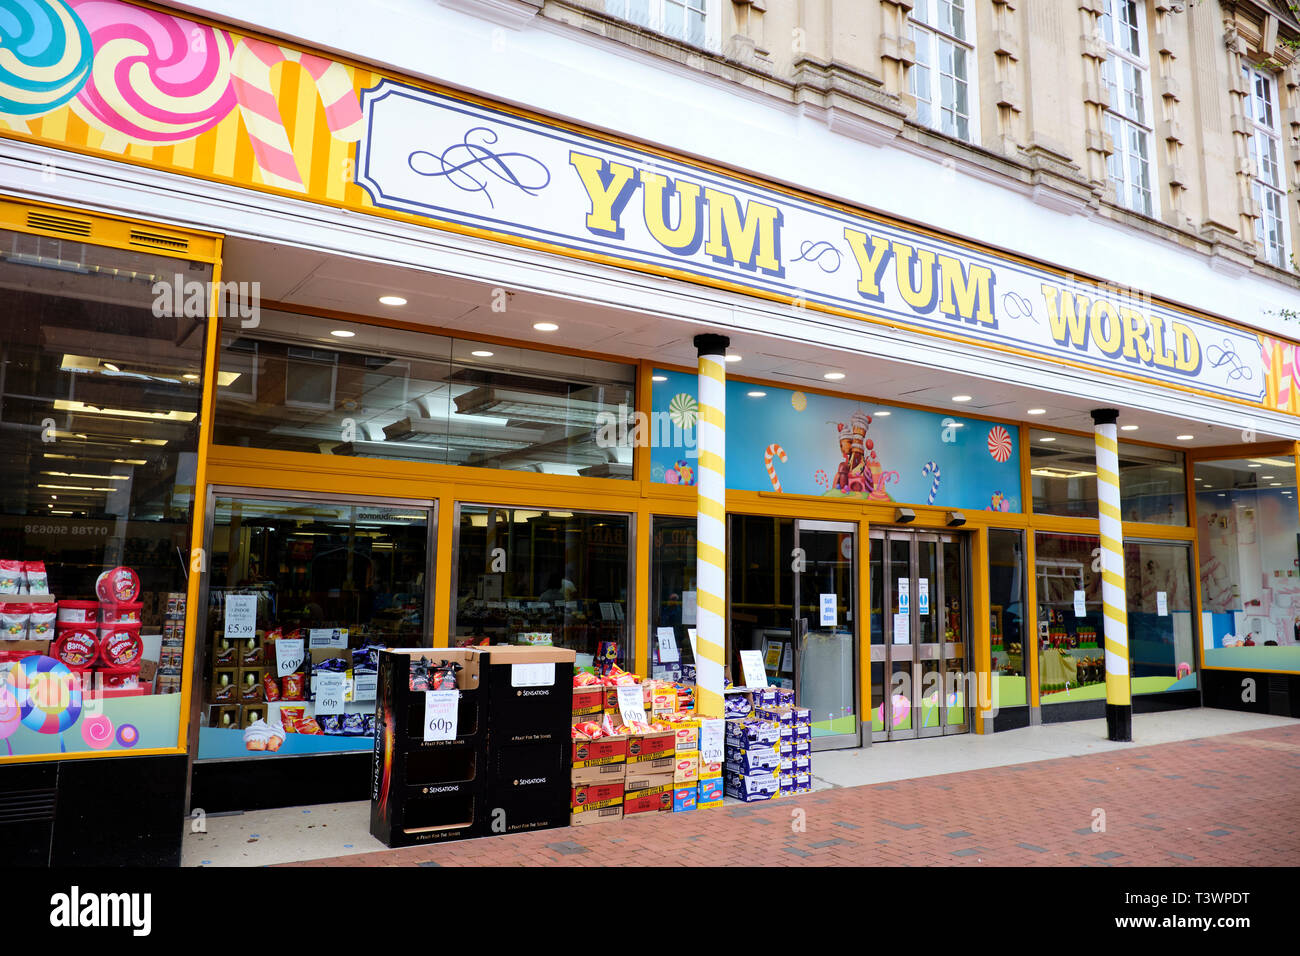 Fachada de Yum Yum Mundo una tienda de dulces y suaves para niños, área de juego High Street, Rugby, Warwickshire, REINO UNIDO Foto de stock